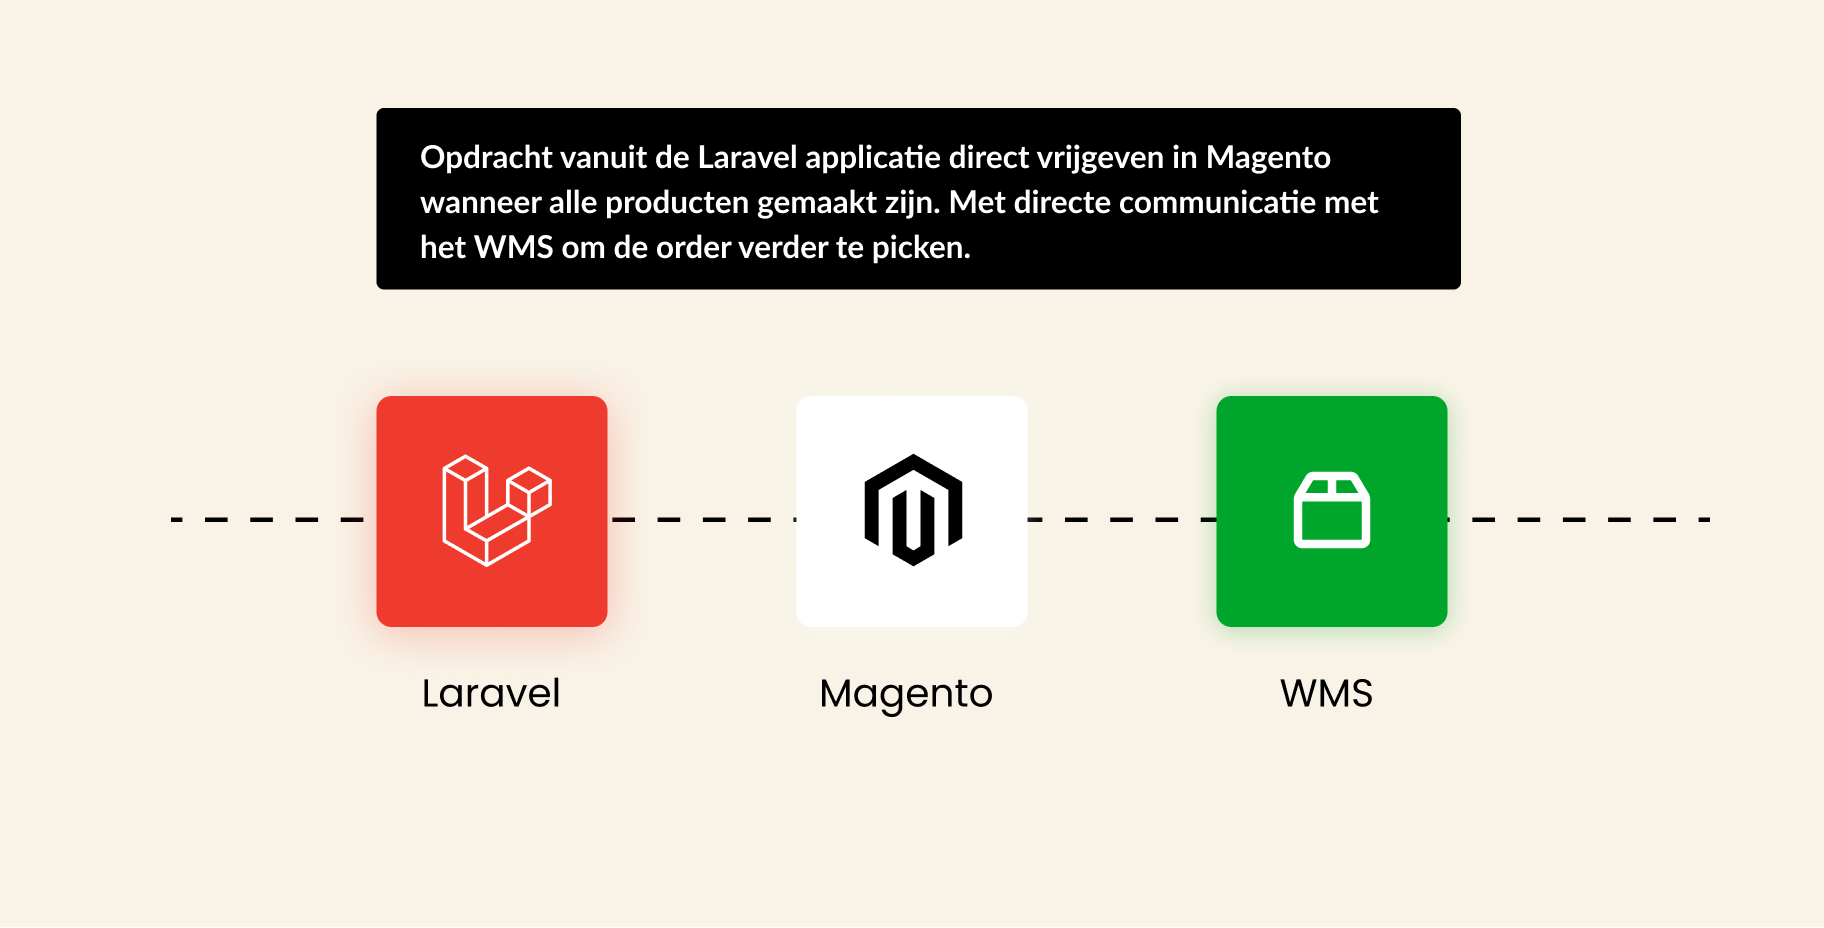 Opdracht vanuit de Laravel applicatie direct vrijgeven in Magento wanneer alle producten gemaakt zijn. Met directe communicatie met het WMS om de order verder te picken.